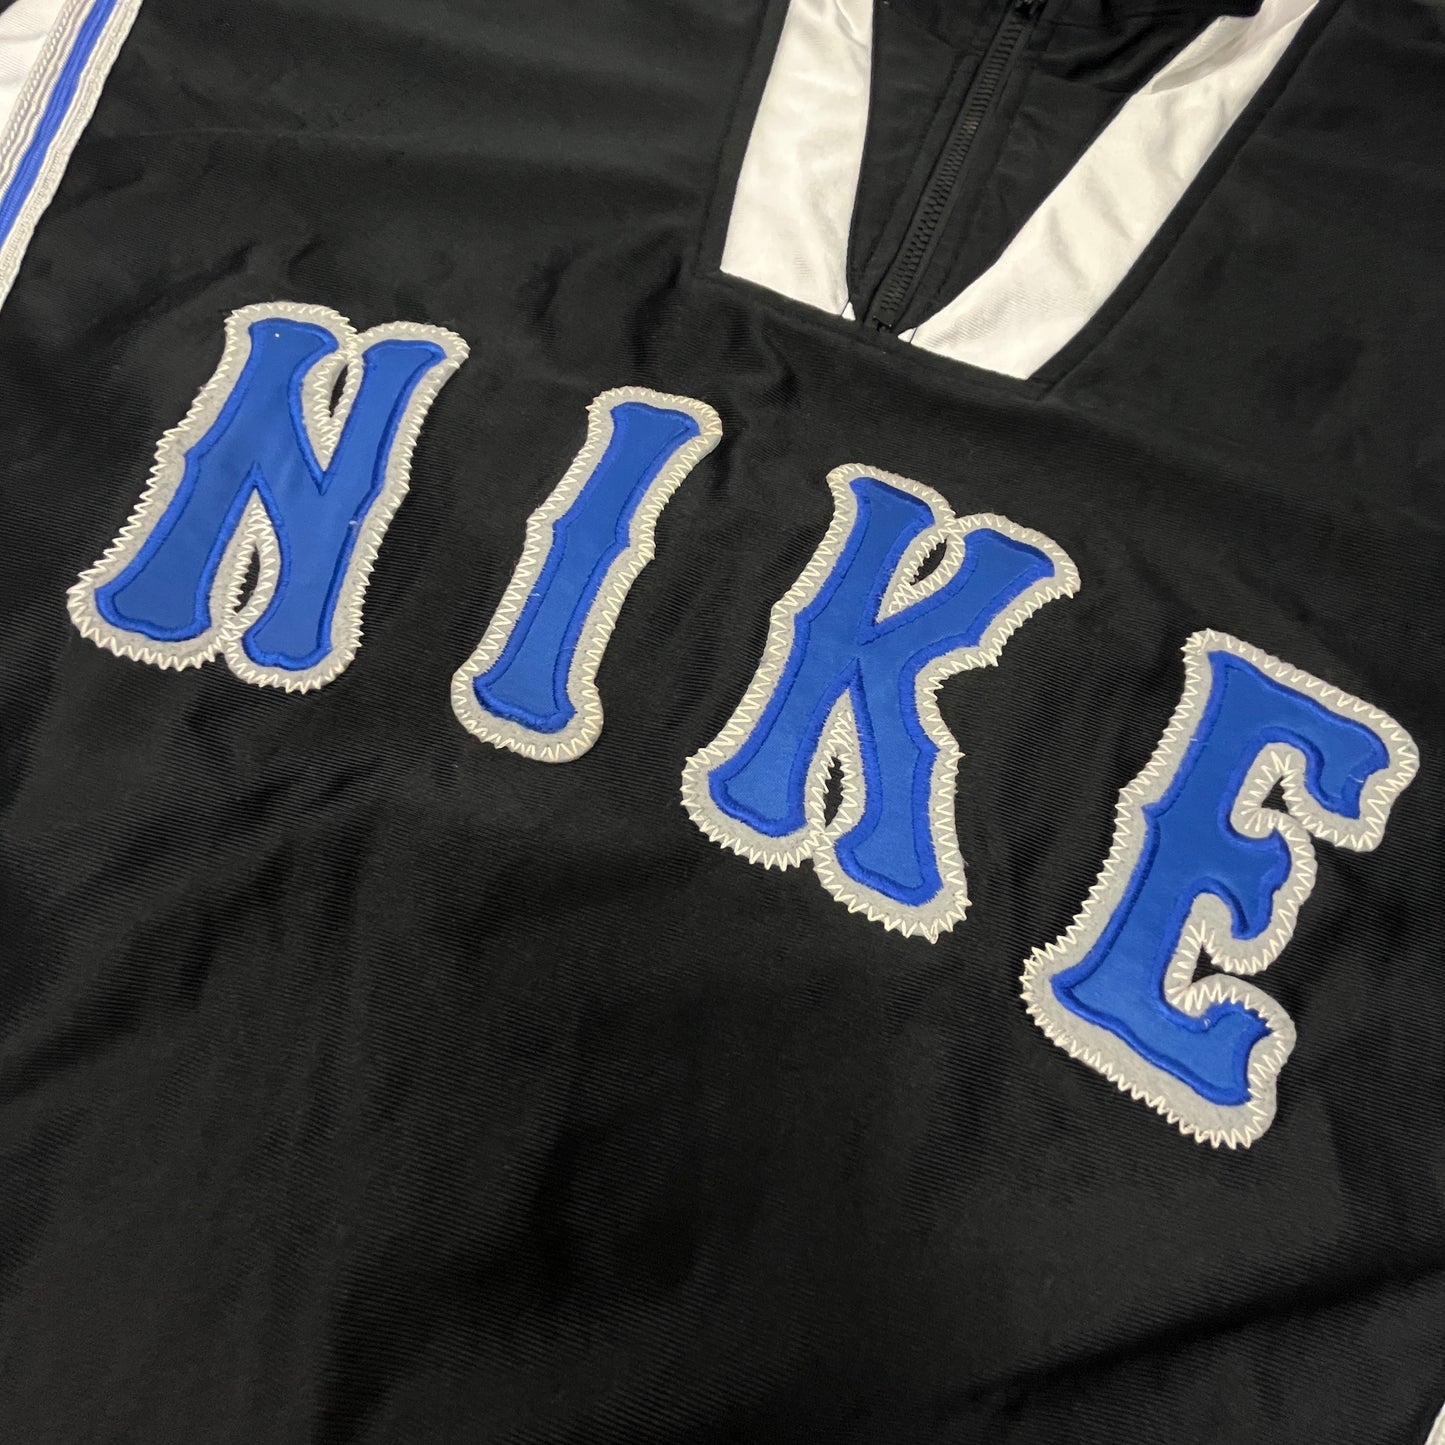 02013 Nike 90s Basketball Jersey